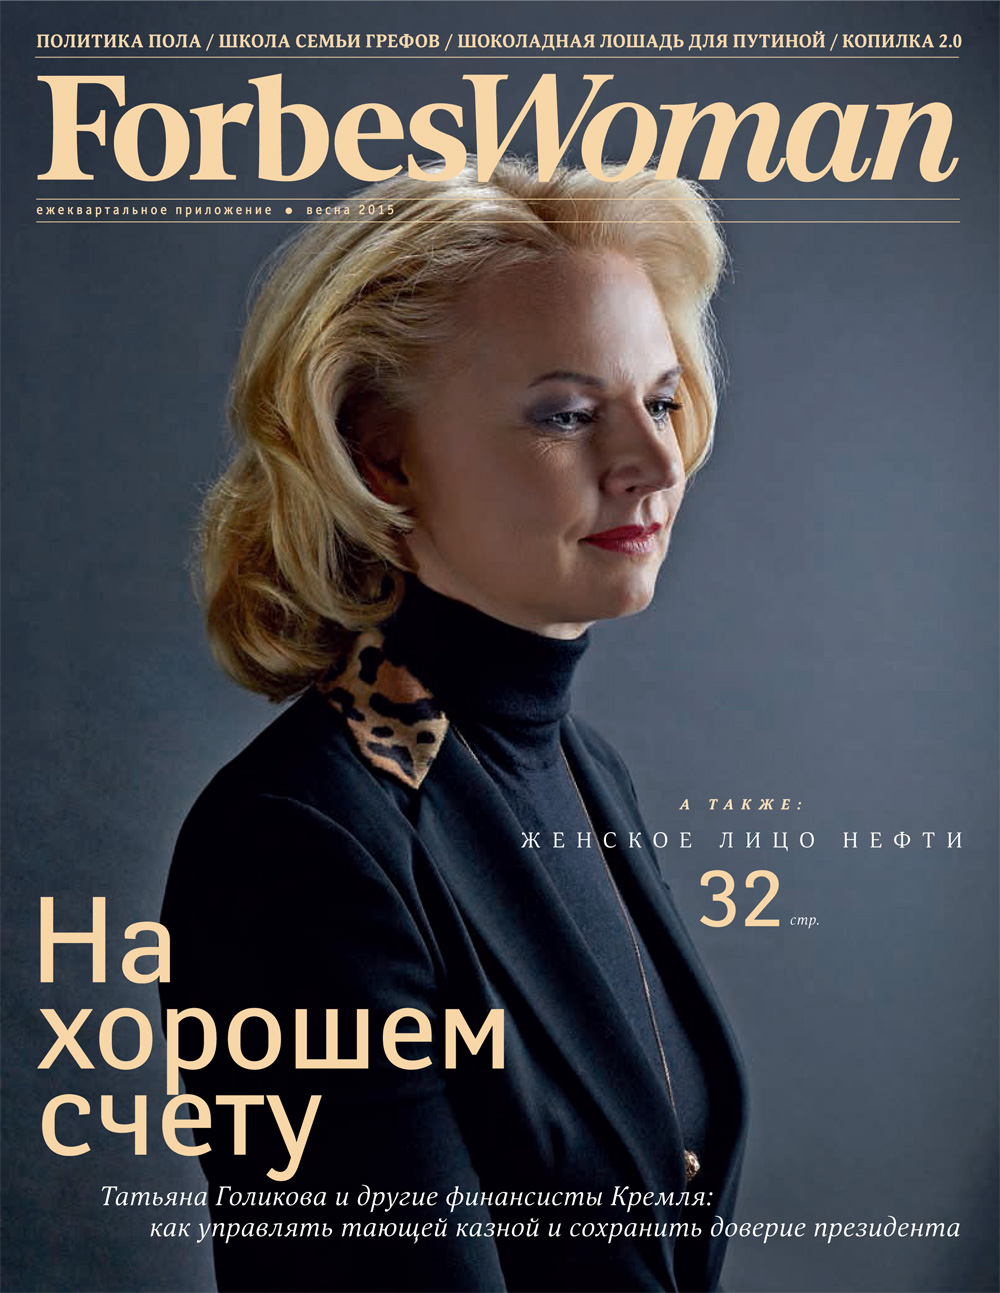 Forbes Woman - одно из самых авторитетных, деловых изданий